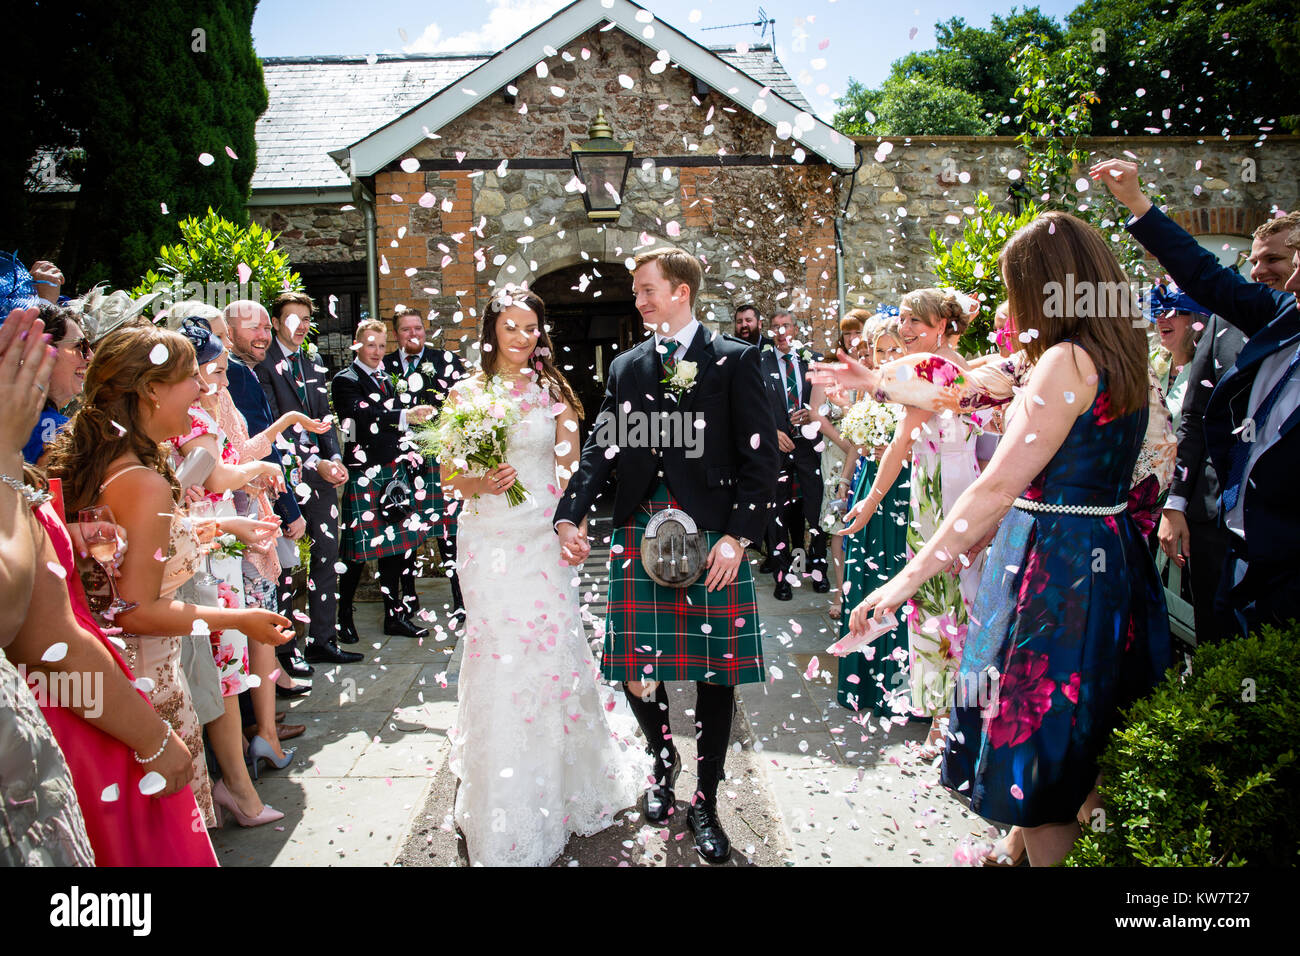 Wedding images Stock Photo